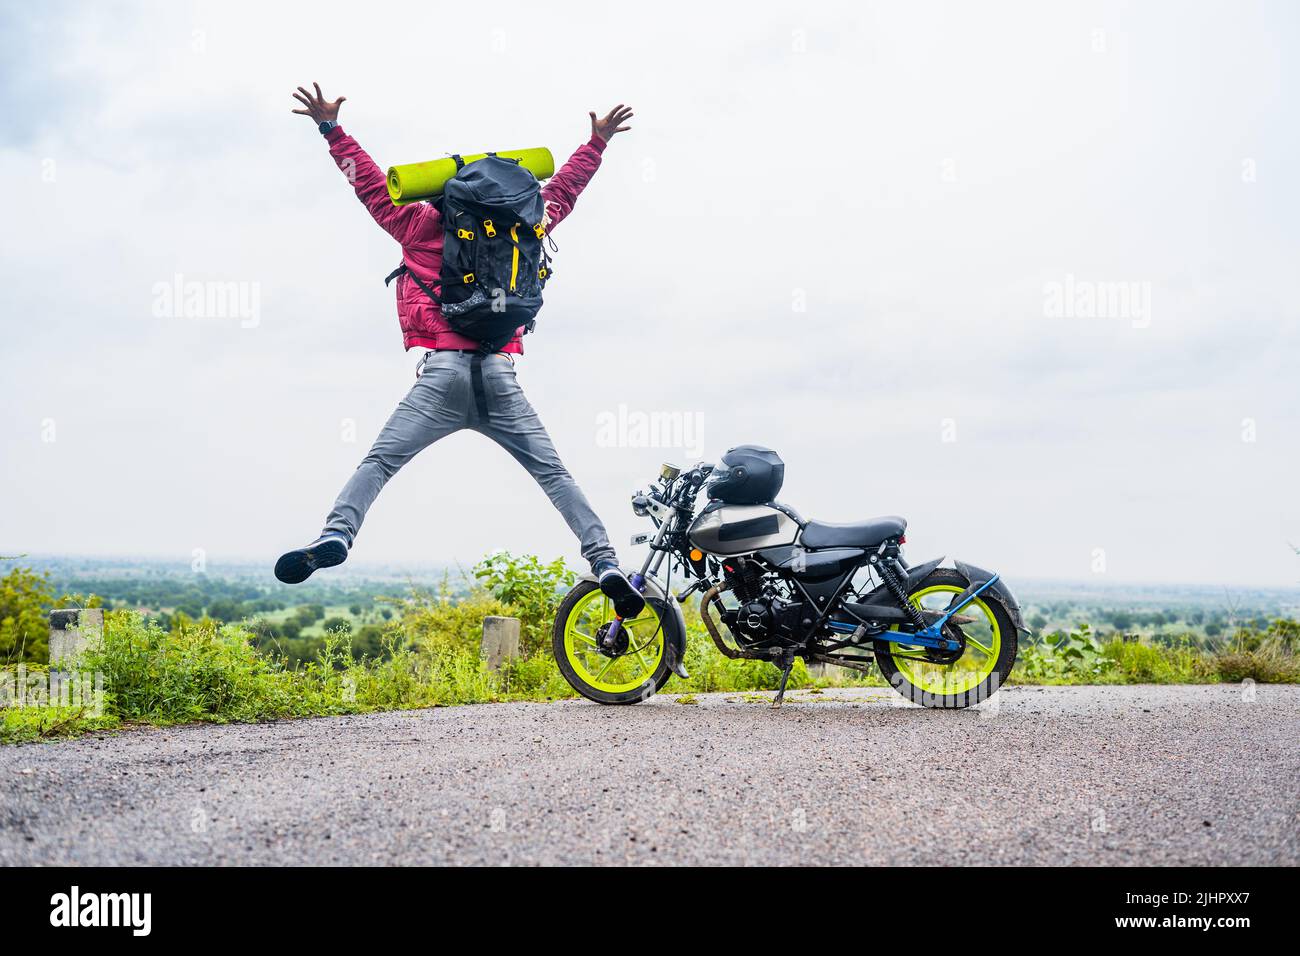 Moto viajero celebrar la naturaleza o después de llegar a destino en la cima de la colina por gritos y saltos - concepto de aventuras, juguetón y Foto de stock